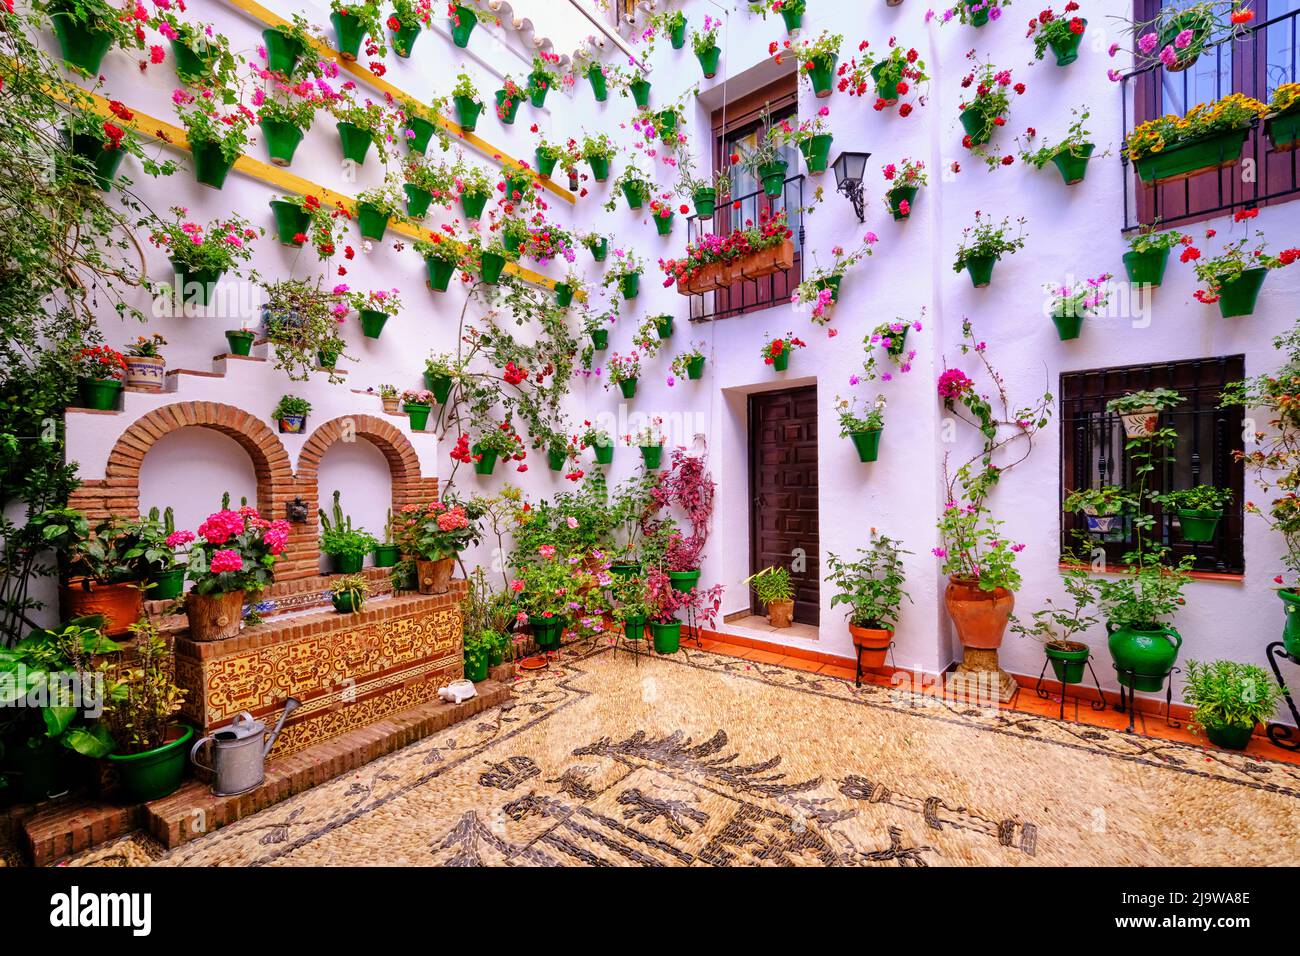 Ein traditioneller Patio von Cordoba, ein Innenhof voller Blumen und Frische. Ein immaterielles UNESCO-Kulturerbe der Menschheit. Andalusien, Spanien Stockfoto